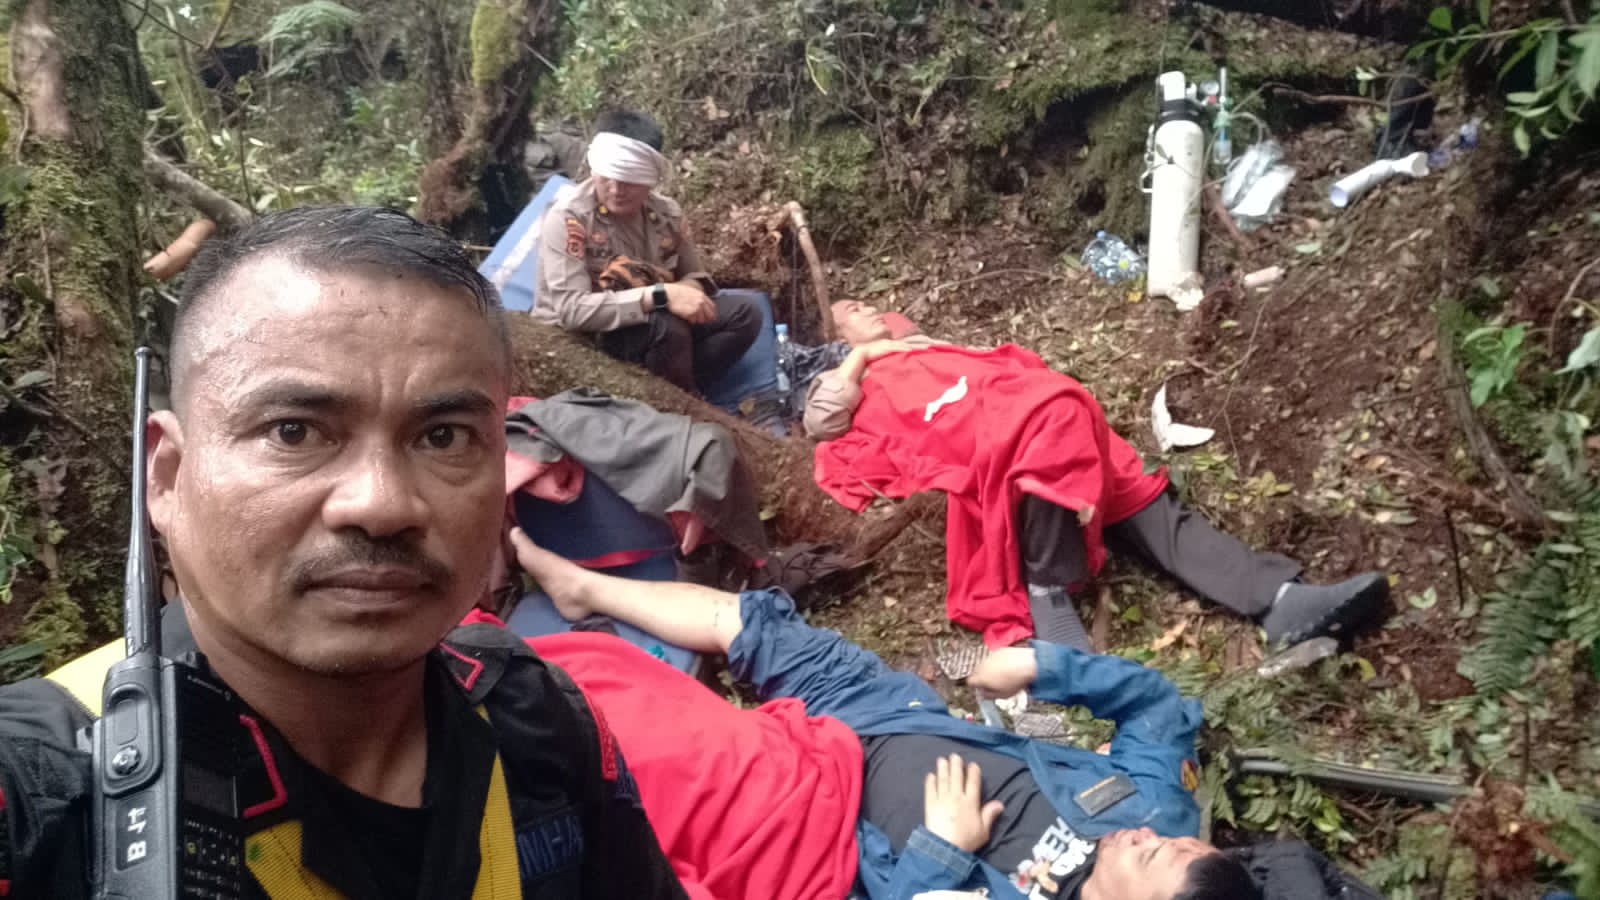 Pukul 13.14 WIB Tim SAR, Basarnas dan Medis Tiba di Lokasi Kecelakaan, Serpihan Heli Berserakan